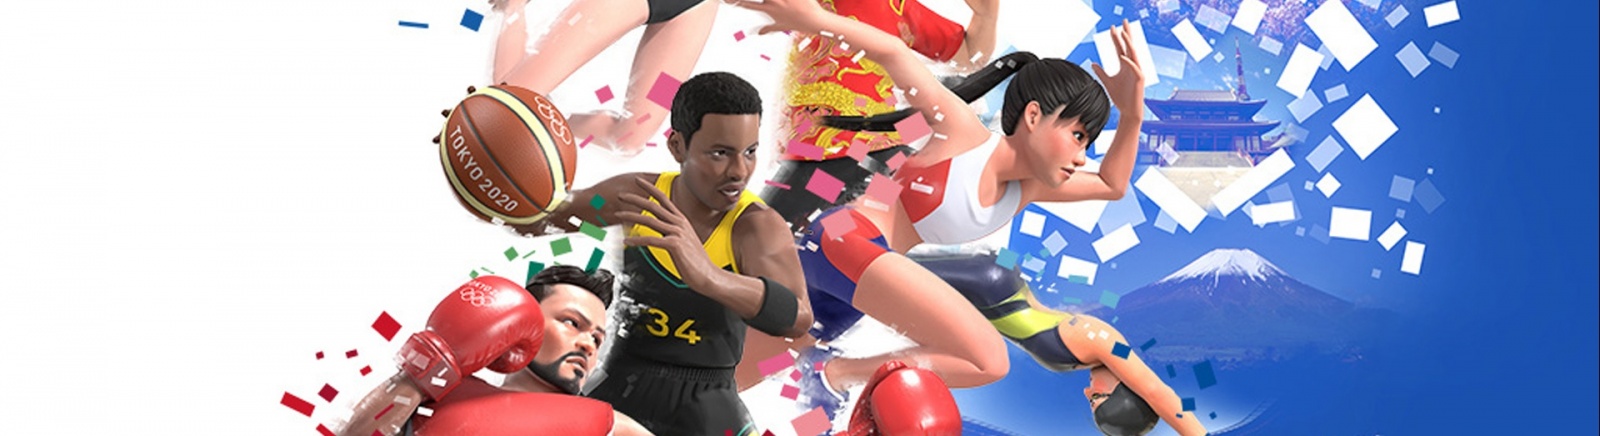 Дата выхода Olympic Games Tokyo 2020: The Official Video Game (Олимпийские игры Tokyo 2020 – Официальная игра)  на PC, PS4 и Xbox One в России и во всем мире